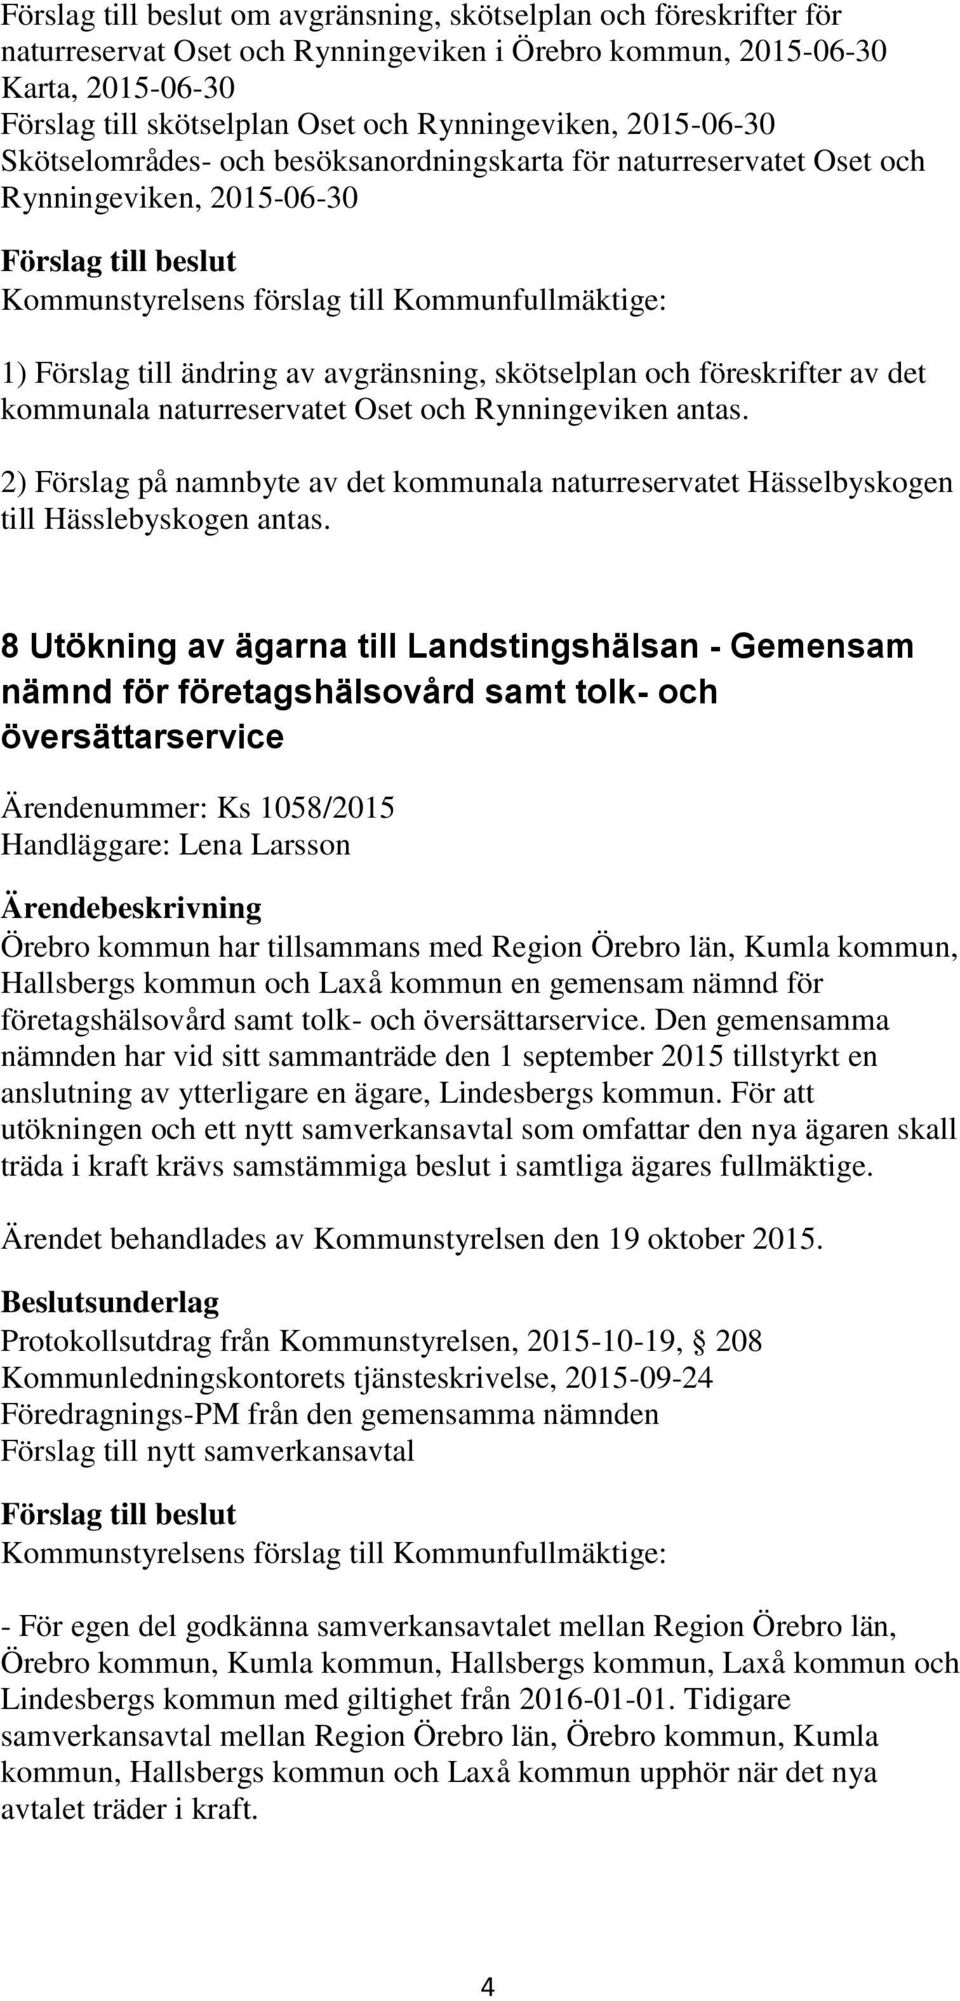 Oset och Rynningeviken antas. 2) Förslag på namnbyte av det kommunala naturreservatet Hässelbyskogen till Hässlebyskogen antas.